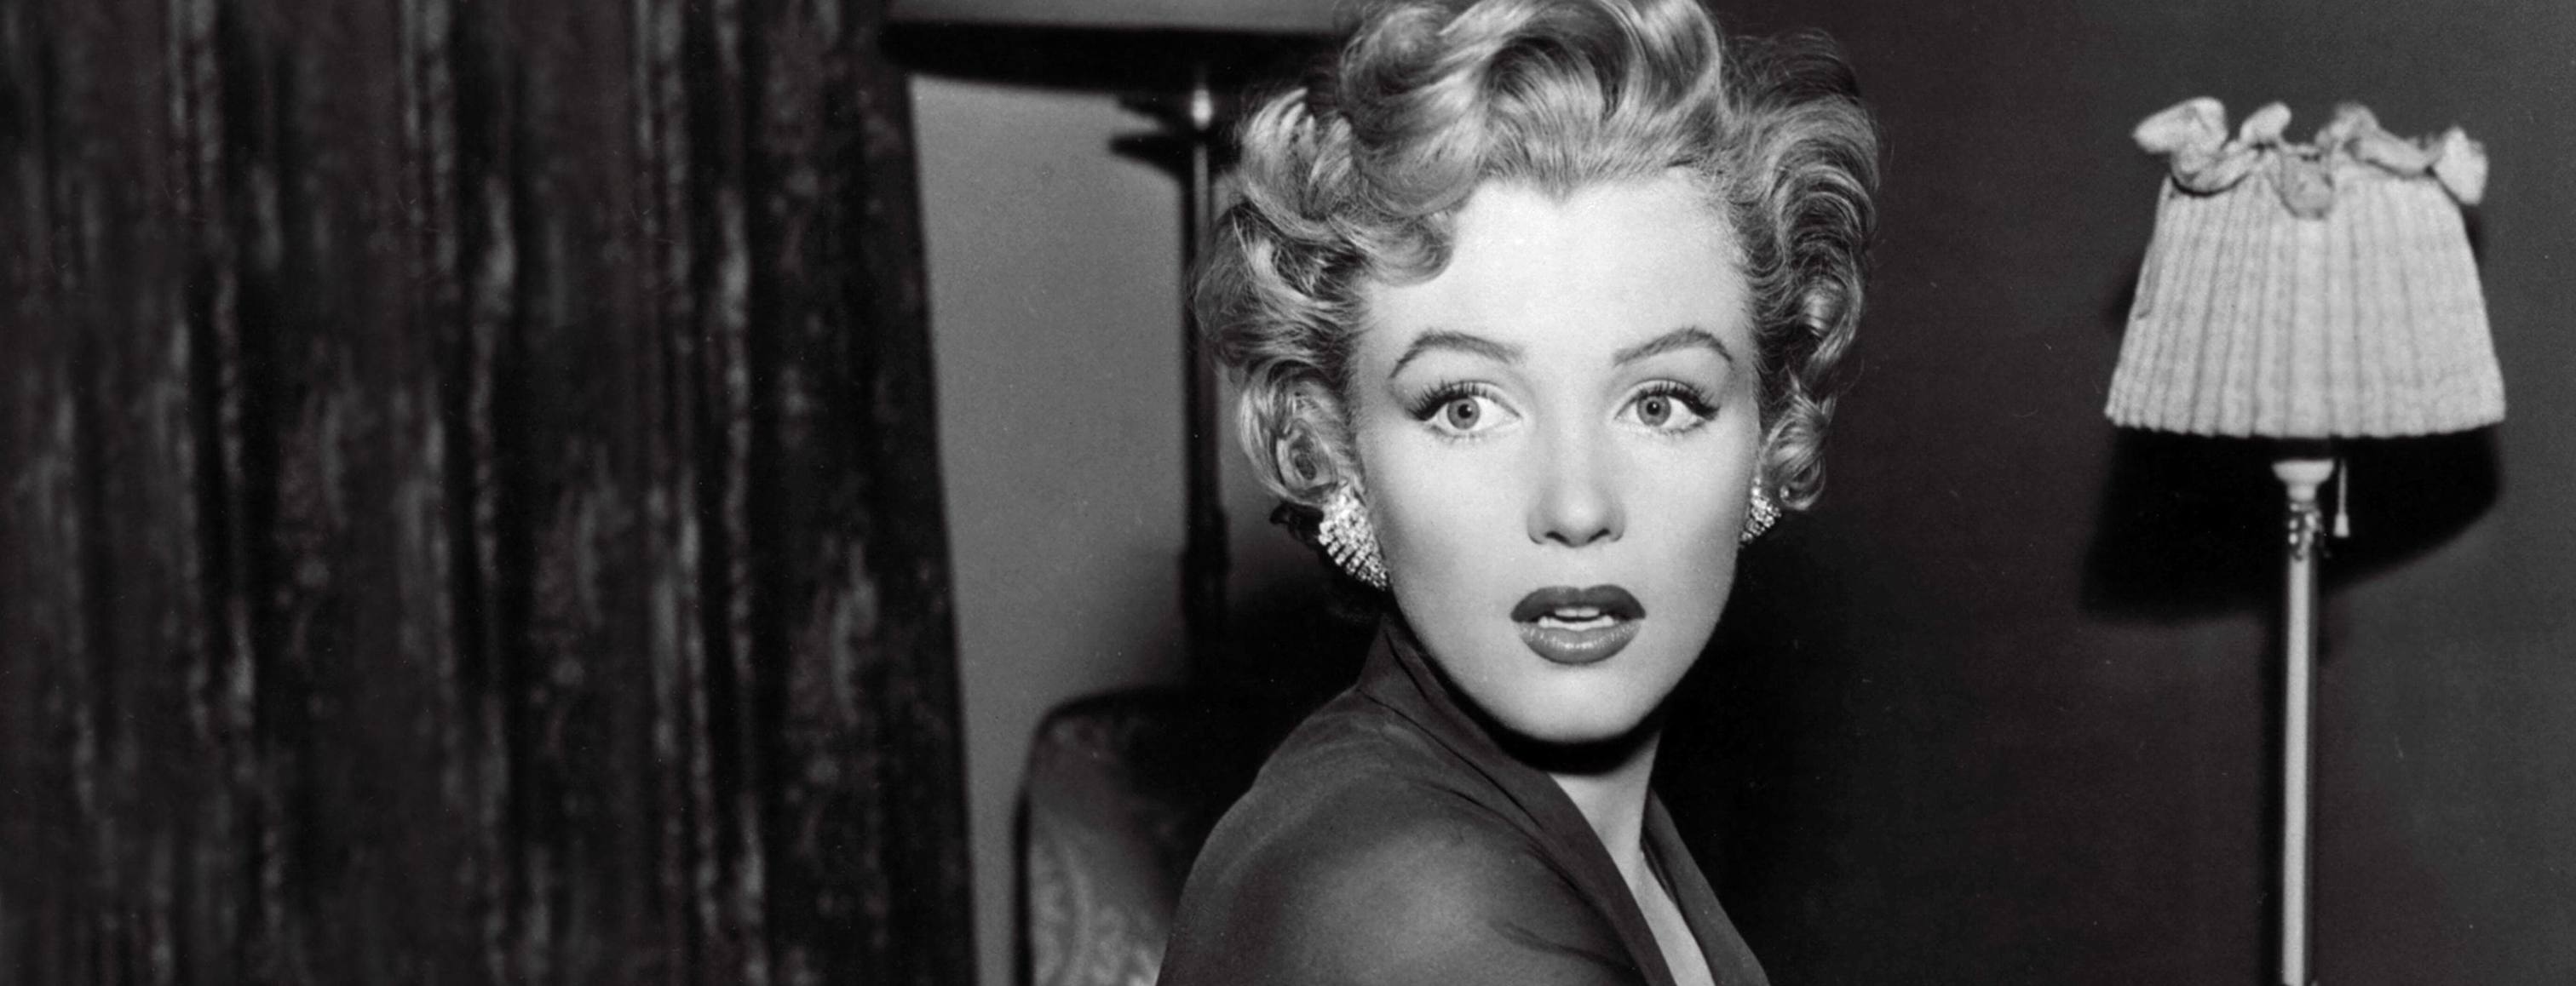 Film La tua bocca brucia - Retrospettiva Marilyn Monroe 